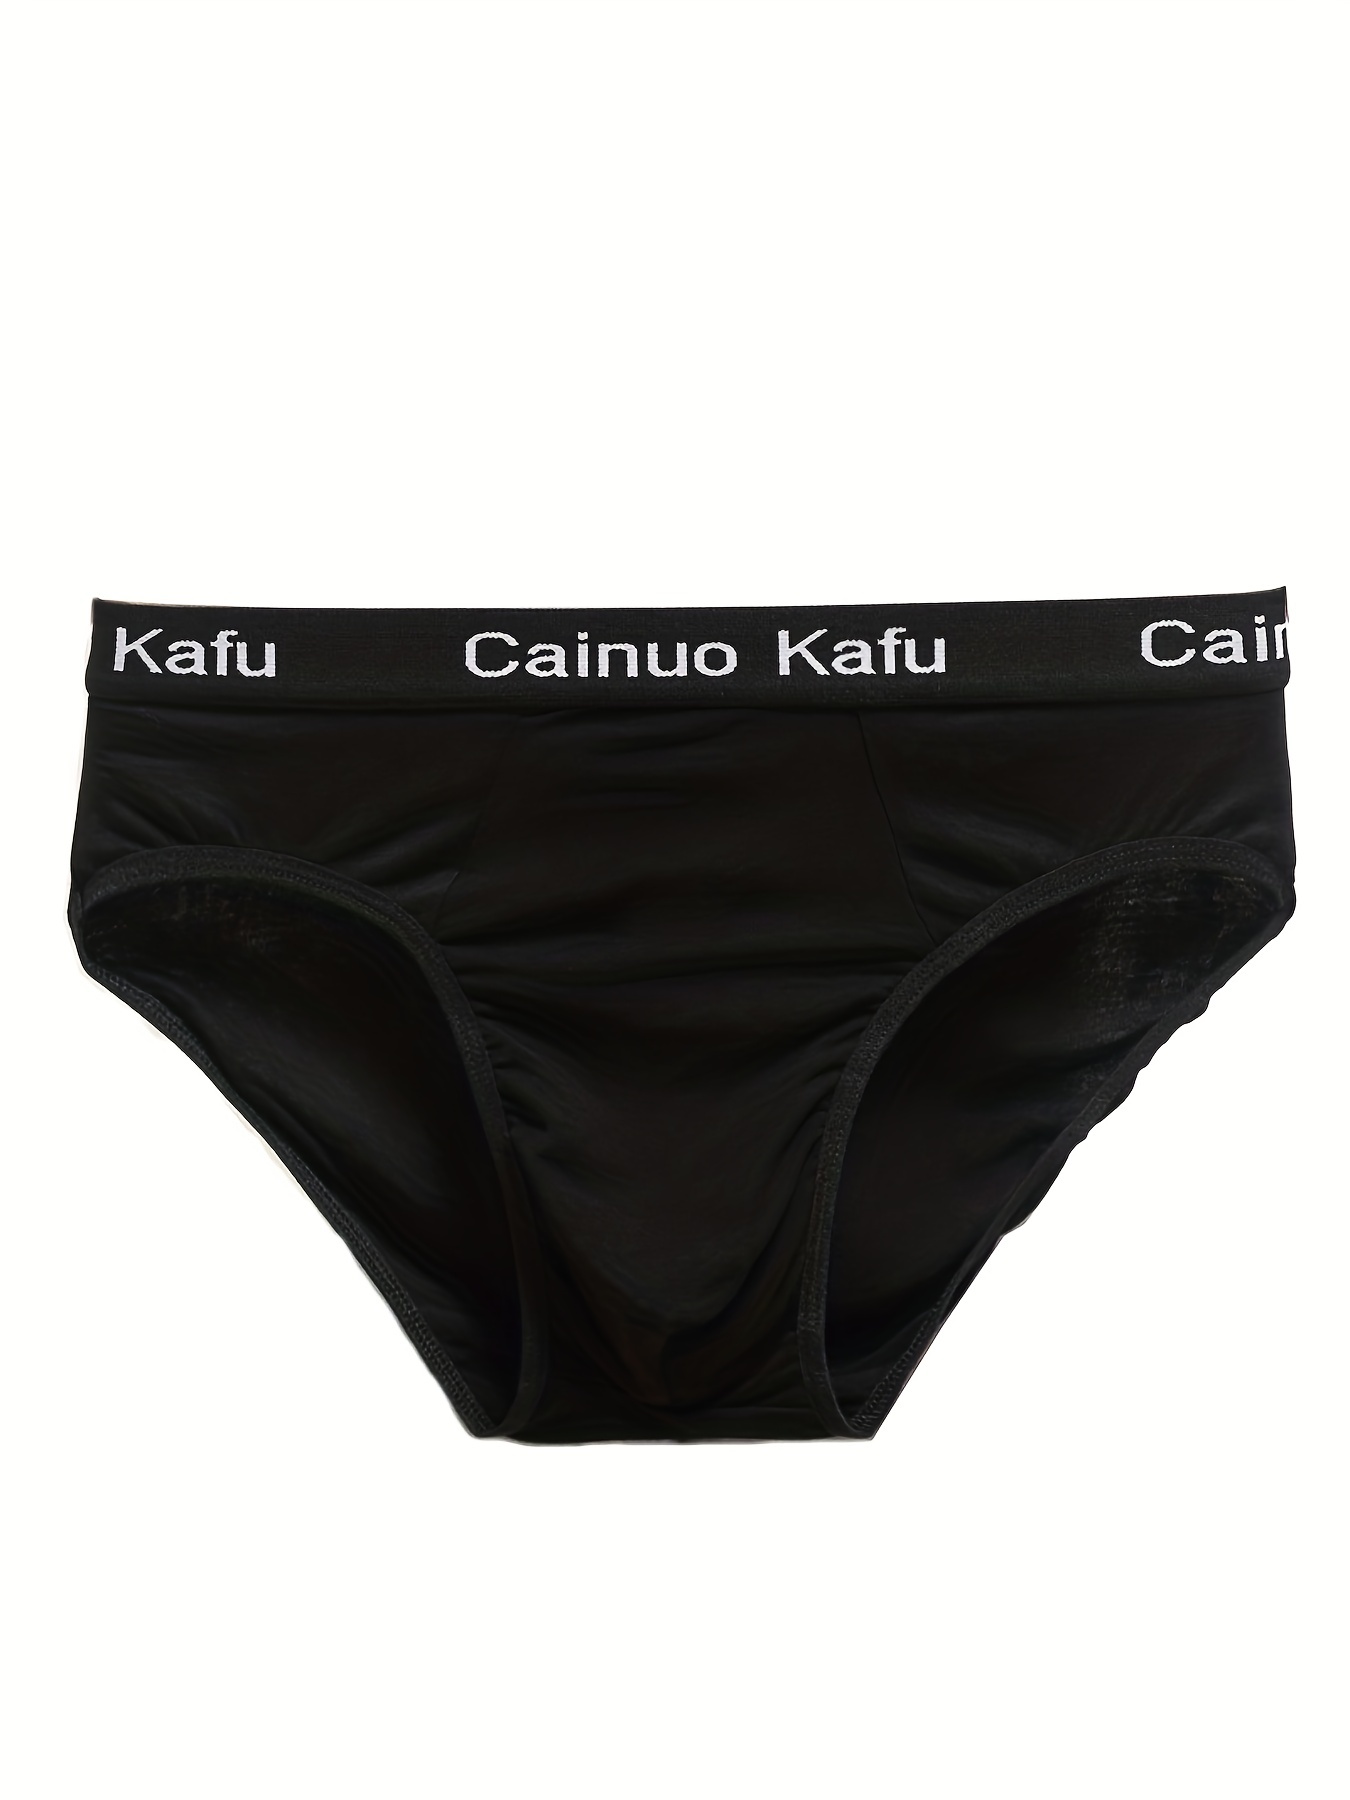 Calvin Klein Girls Graphic Bikini Panty Underwear Comfort stretch